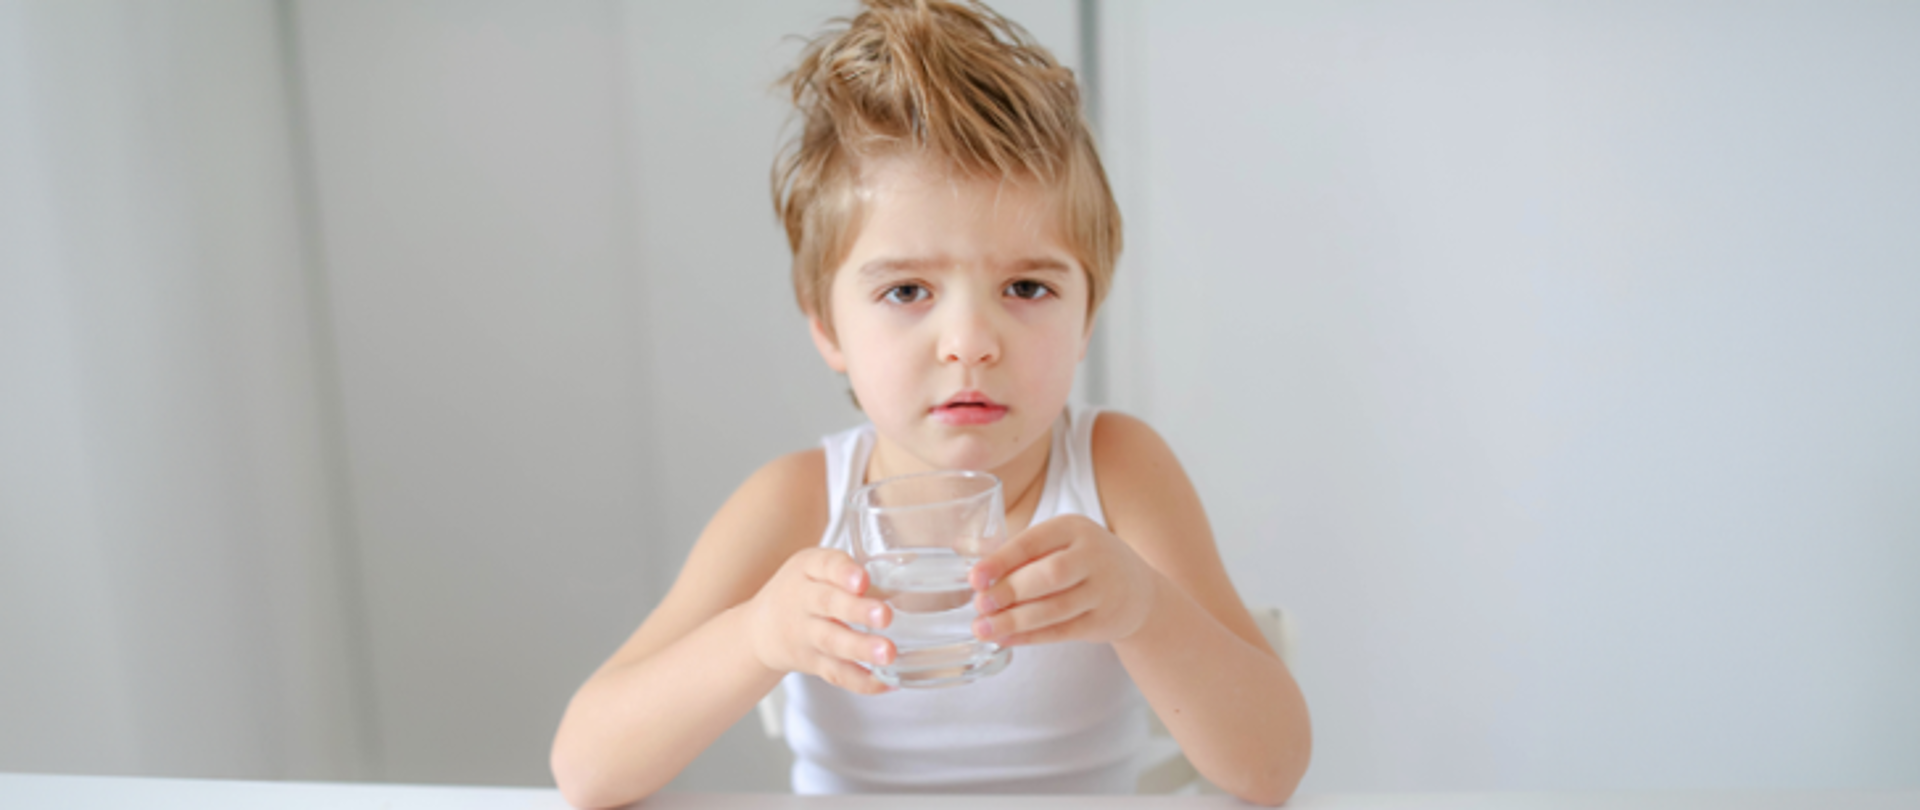 Przy stoliku siedzi kilkuletni chłopiec, który trzyma w ręku szklankę z wodą 